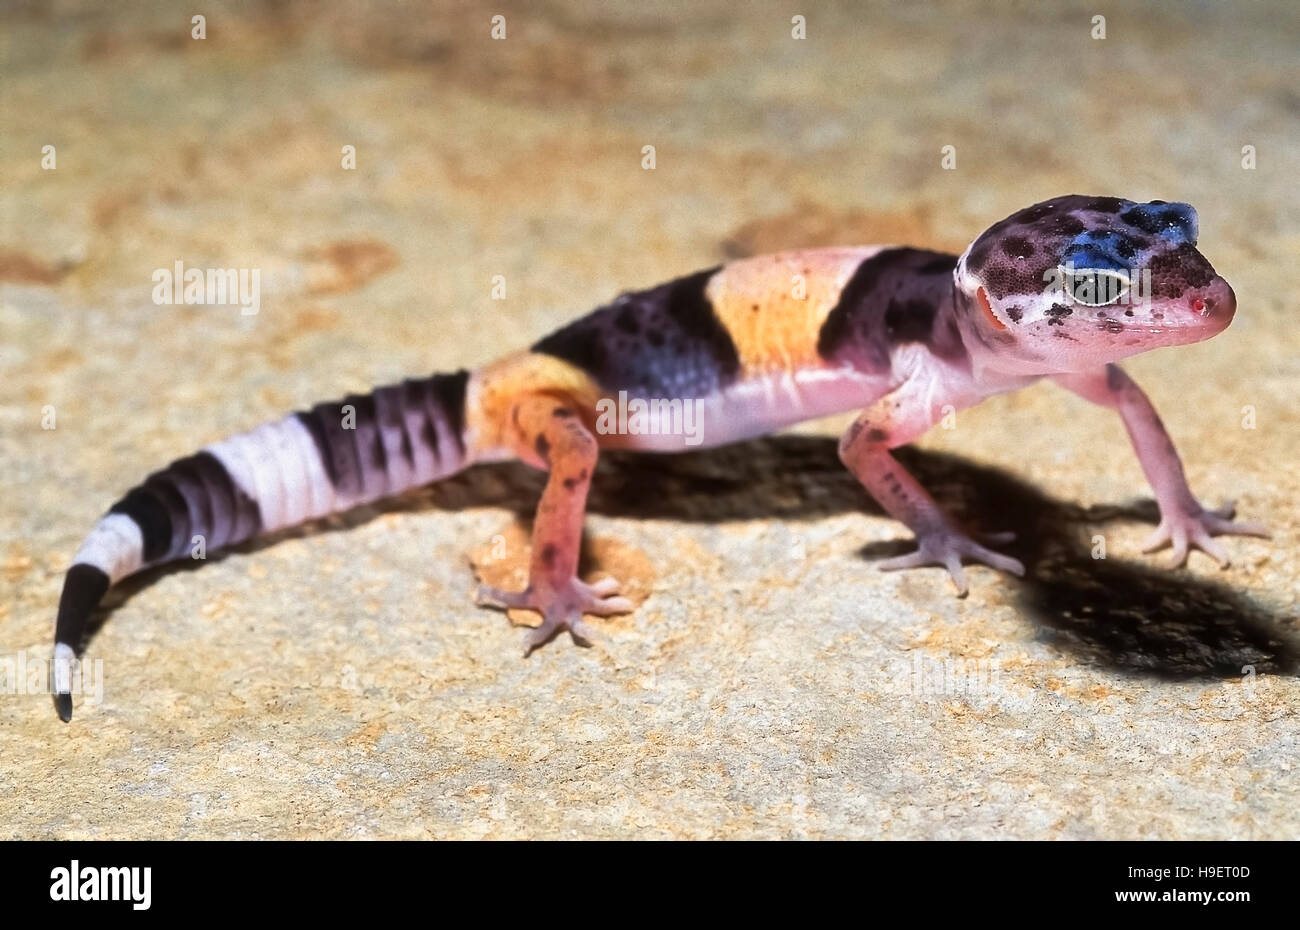 Les Indiens de l'Ouest gecko léopard Eublepharis fuscus de mineurs près de Jejuri, Maharashtra, Inde. Gommage à sec et habite des zones rocheuses. Se nourrit d'insectes Banque D'Images